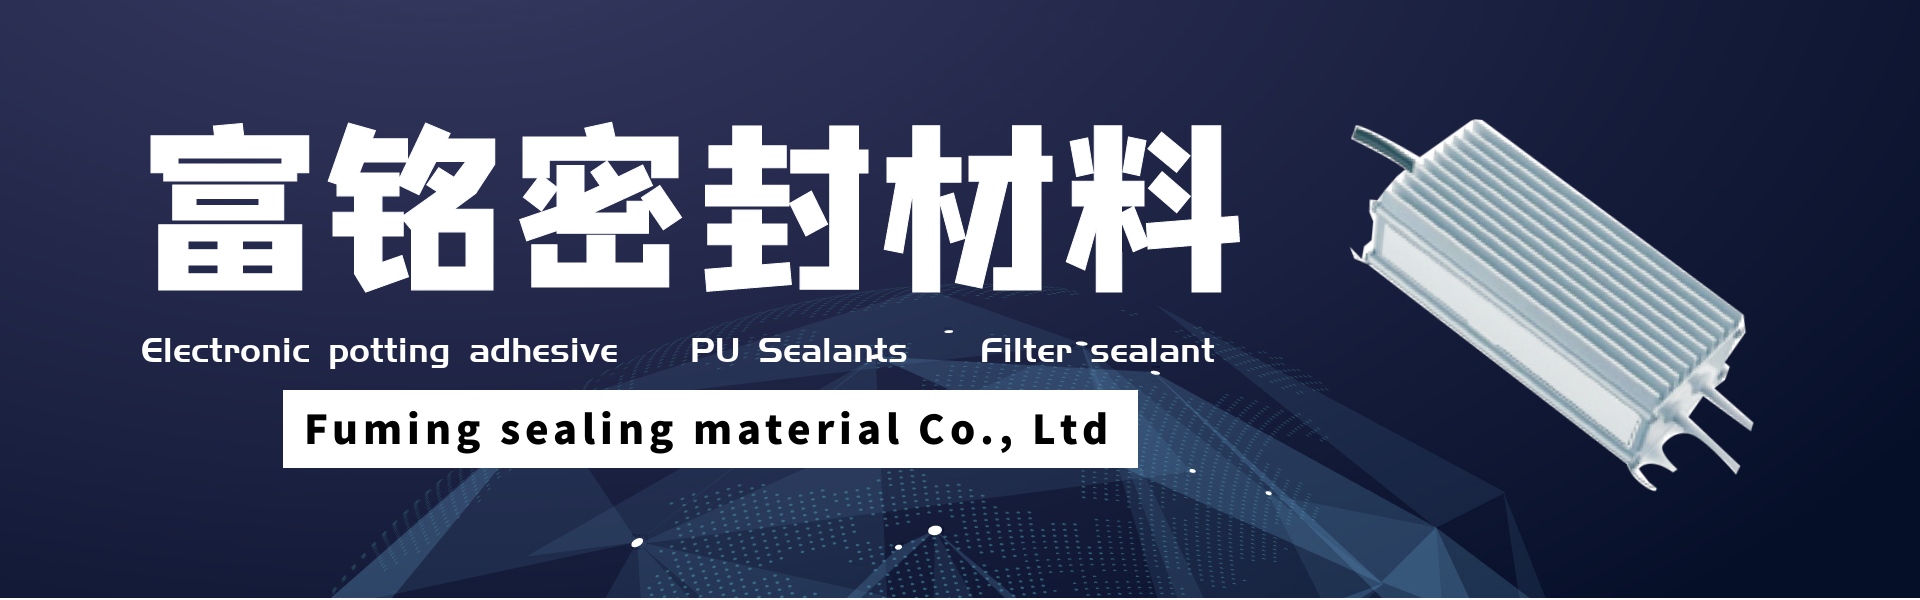 elektronisk pottelim, pu fugemasse, filterforsegling,Dongguan fuming sealing material Co., Ltd